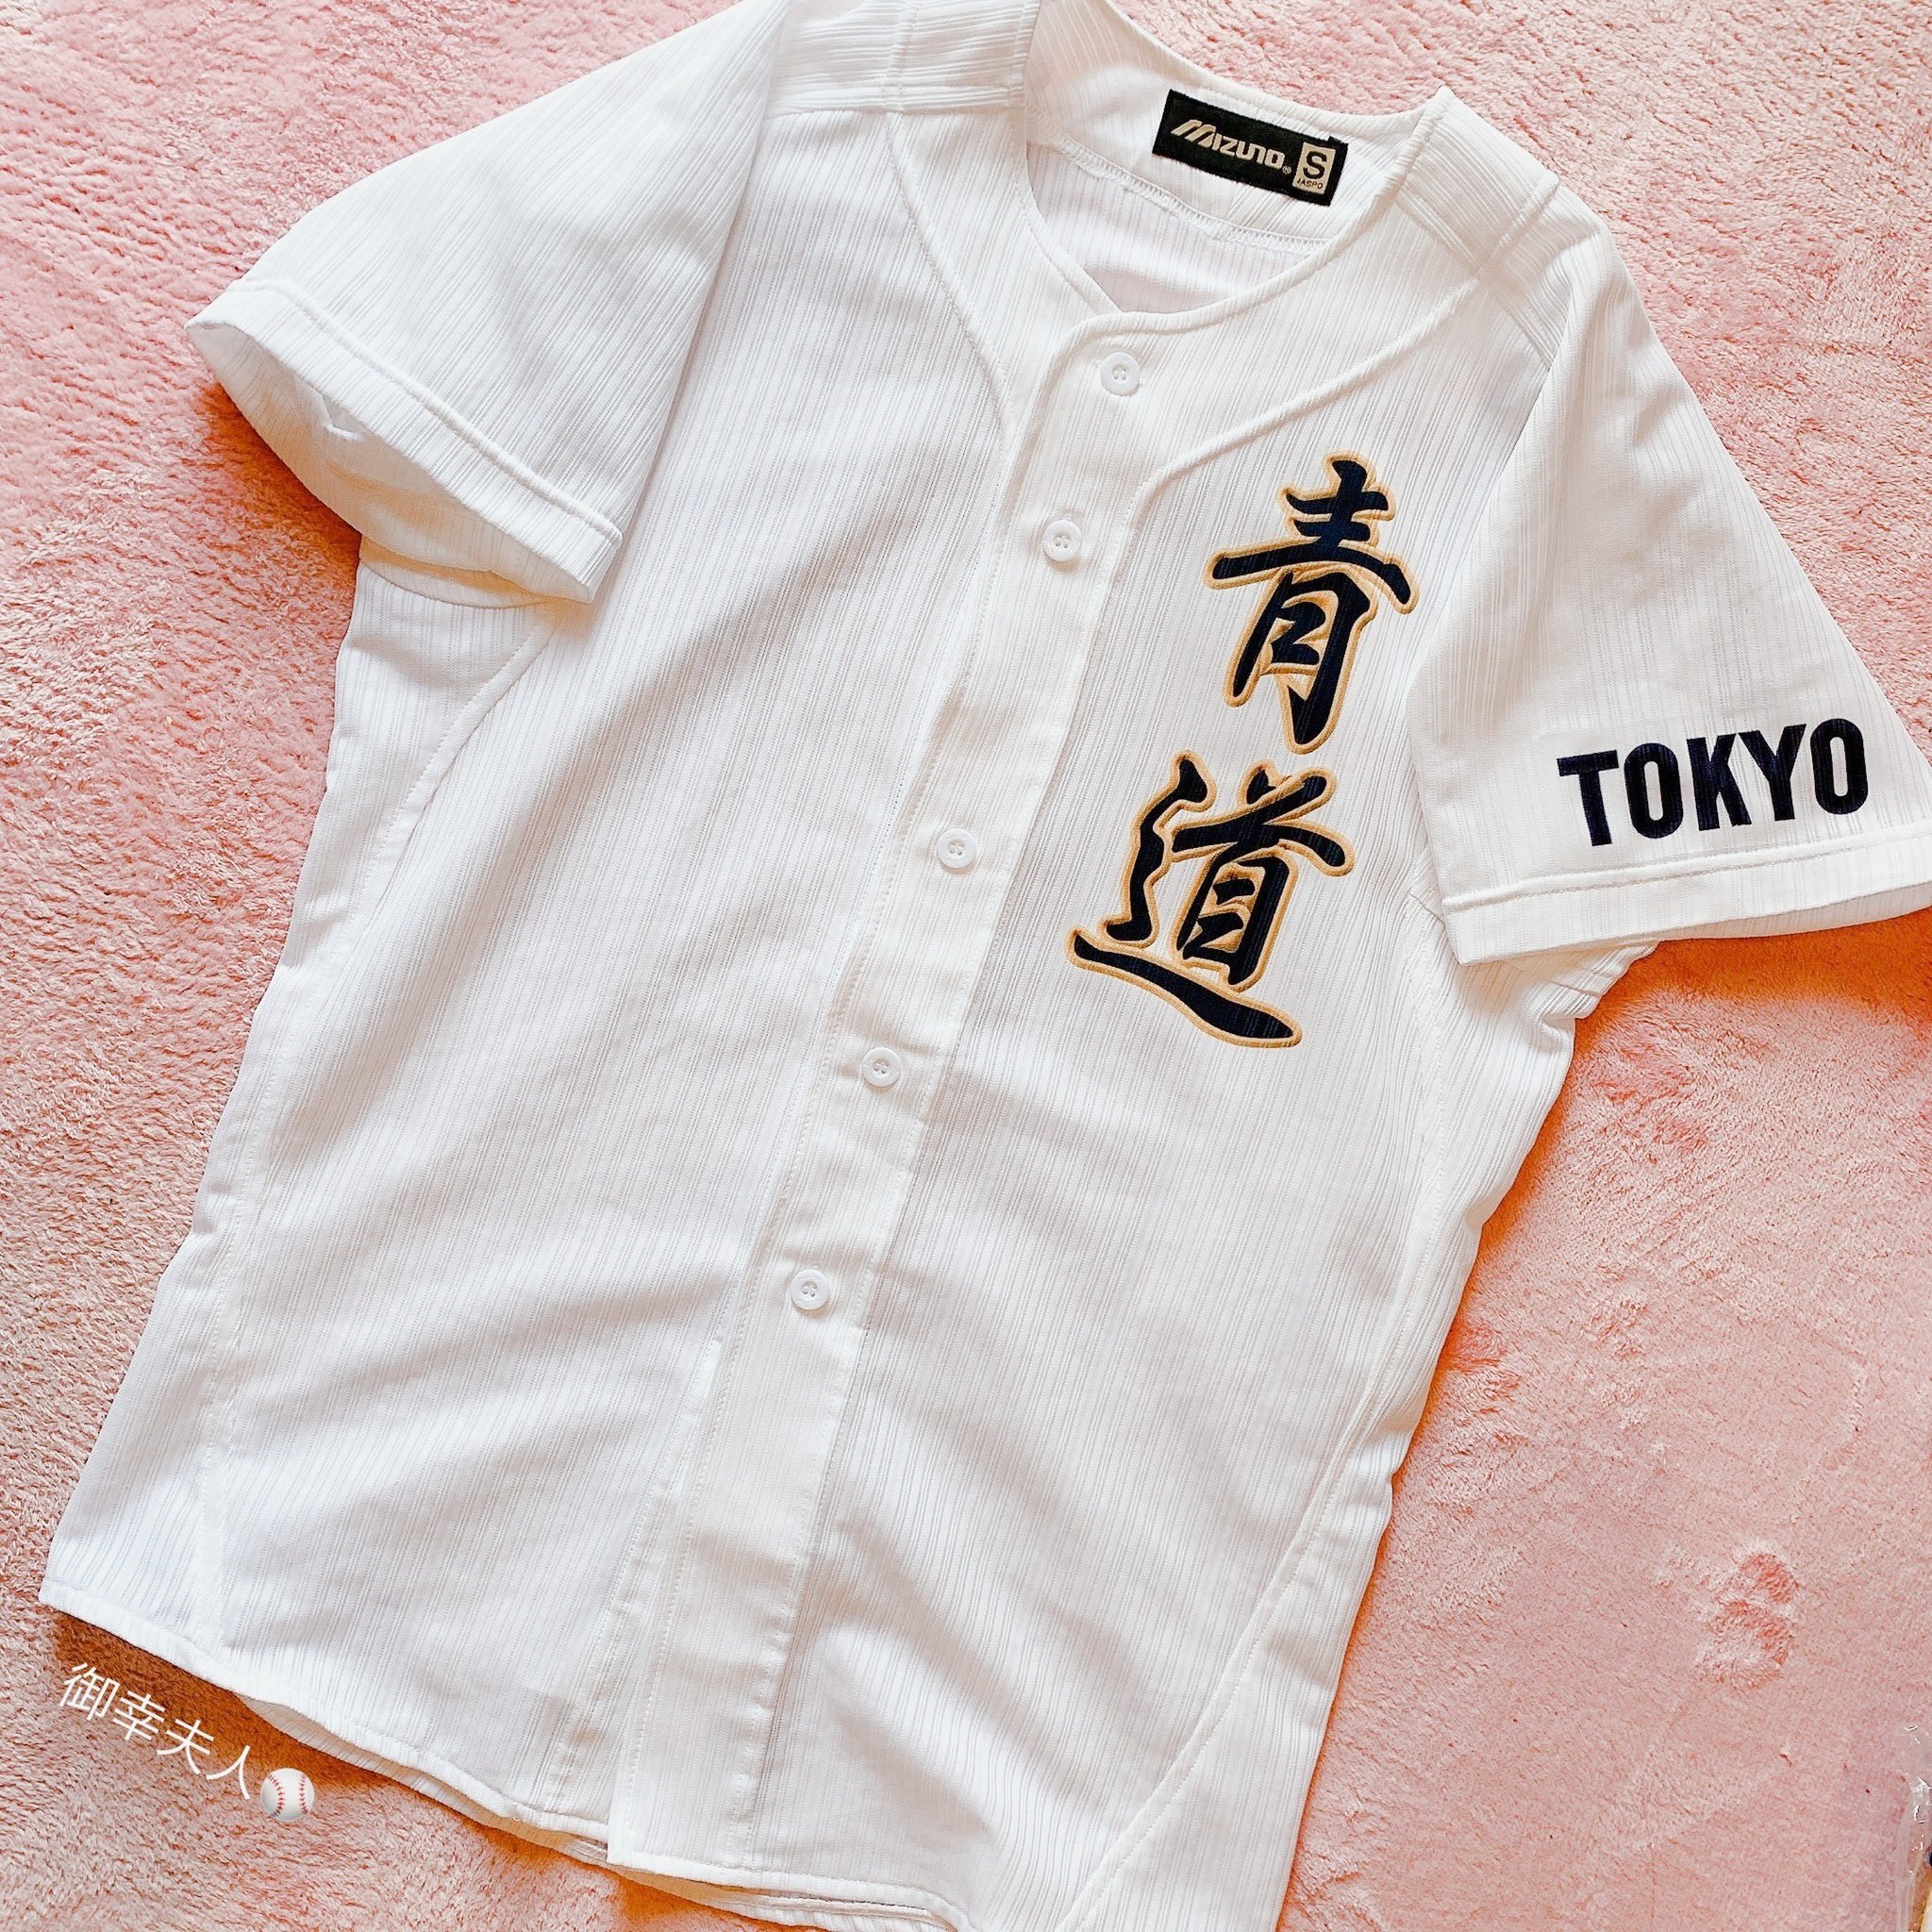 愛良⚾️🦄🐻➁ on X: official seido baseball jersey from mizuno